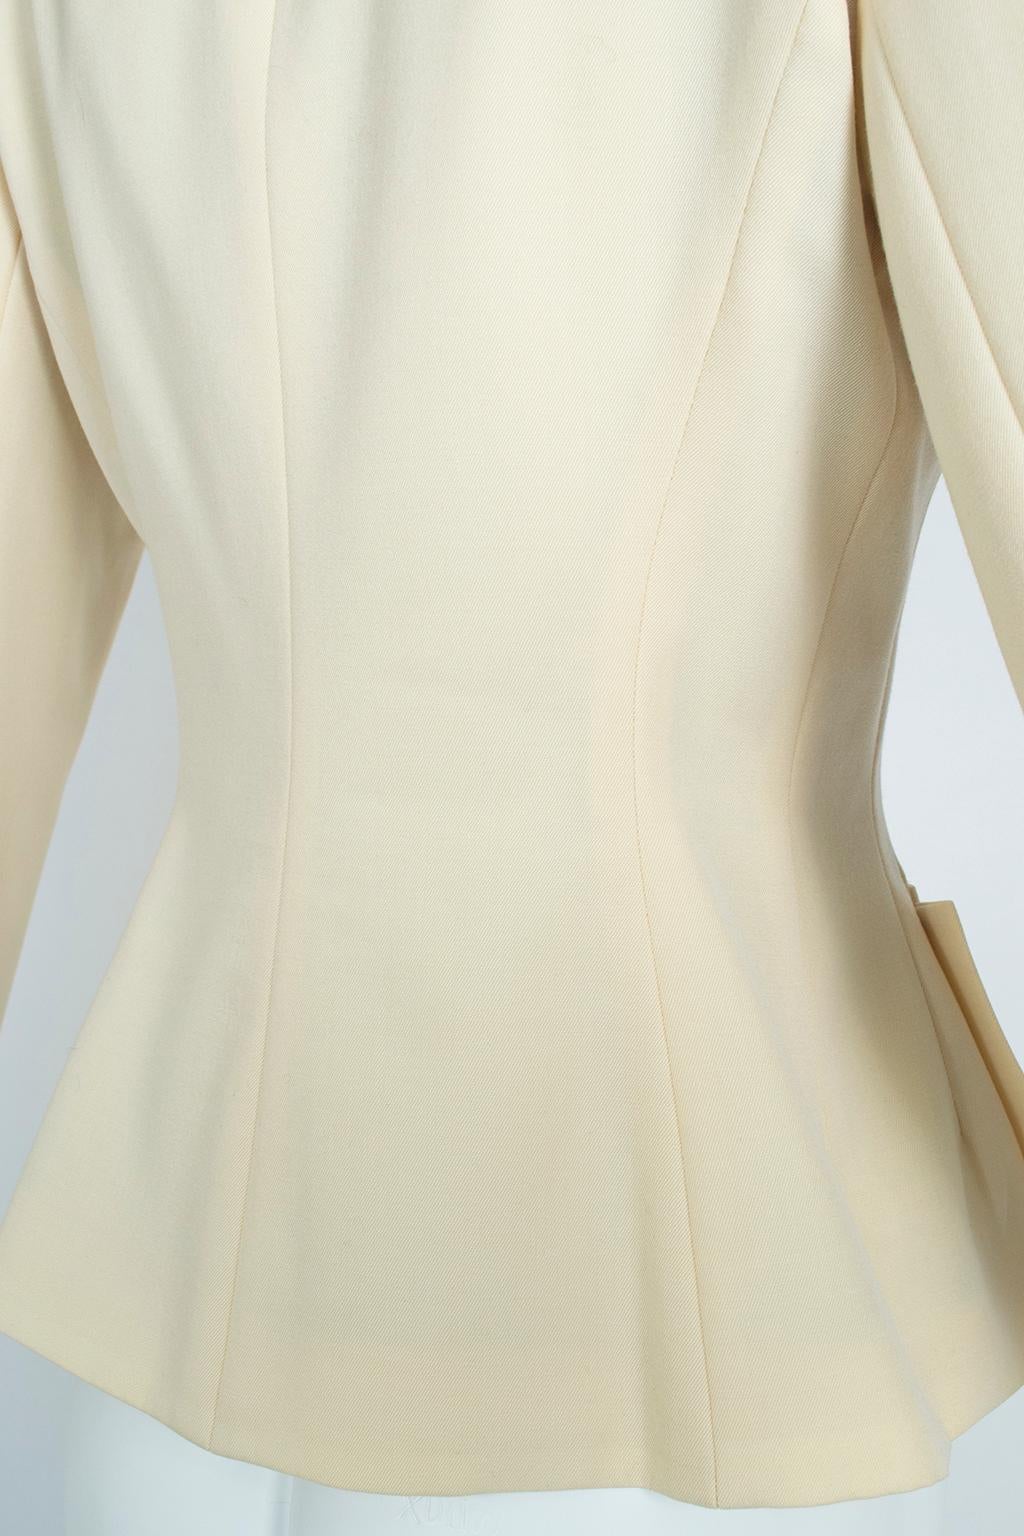 Norma Kamali Ivory Wool Dioresque Sculpted Bar Jacket Peplum Blazer - XS, 1980s 3